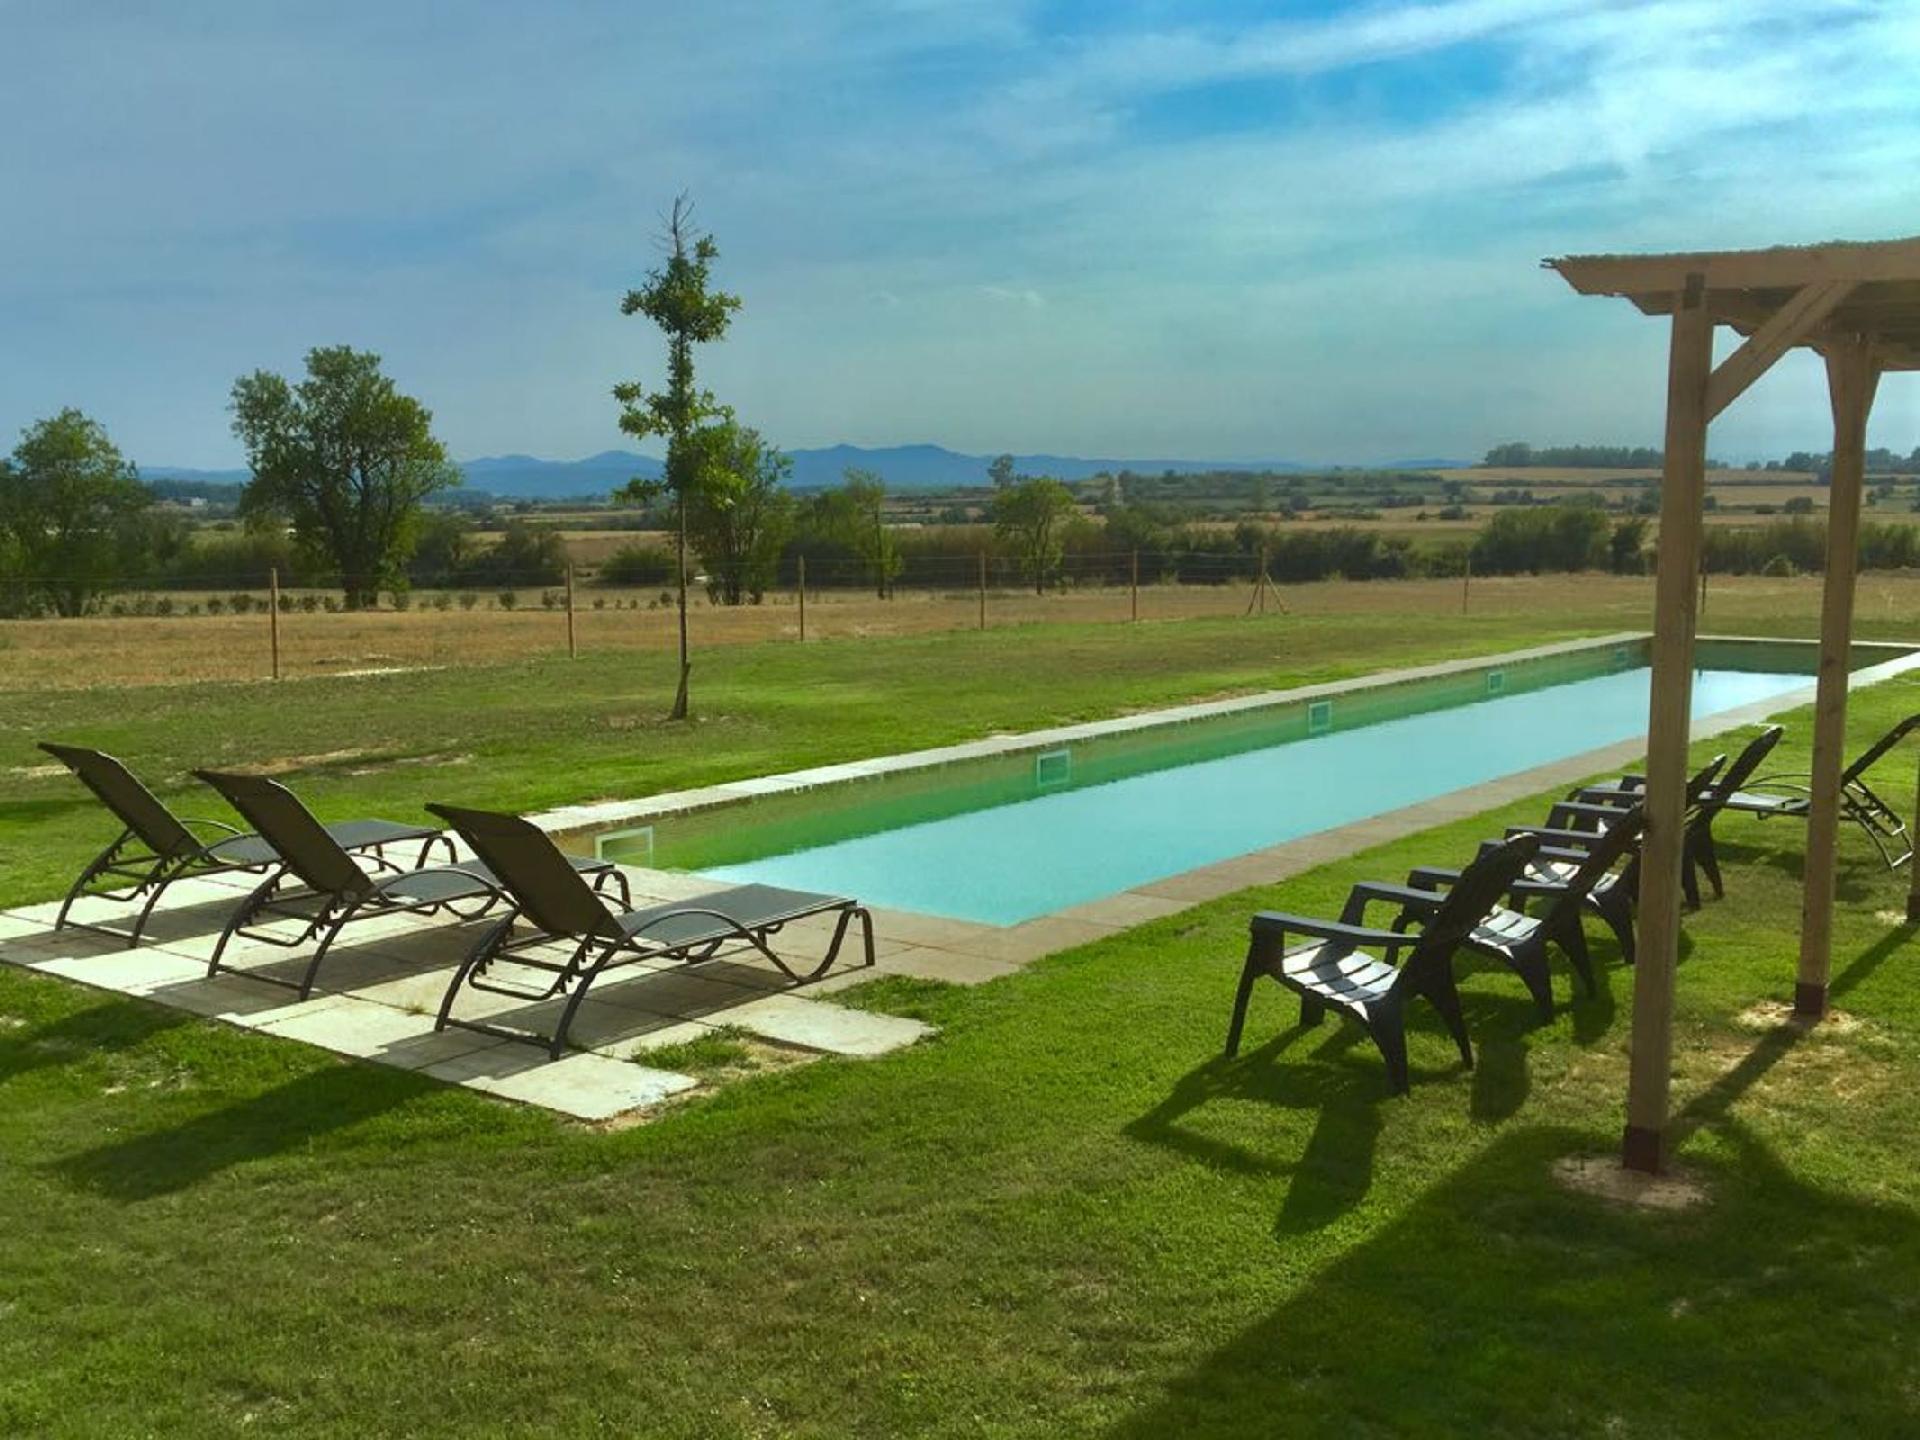 Ferienhaus mit Privatpool für 8 Personen  + 7 Ferienhaus in Spanien